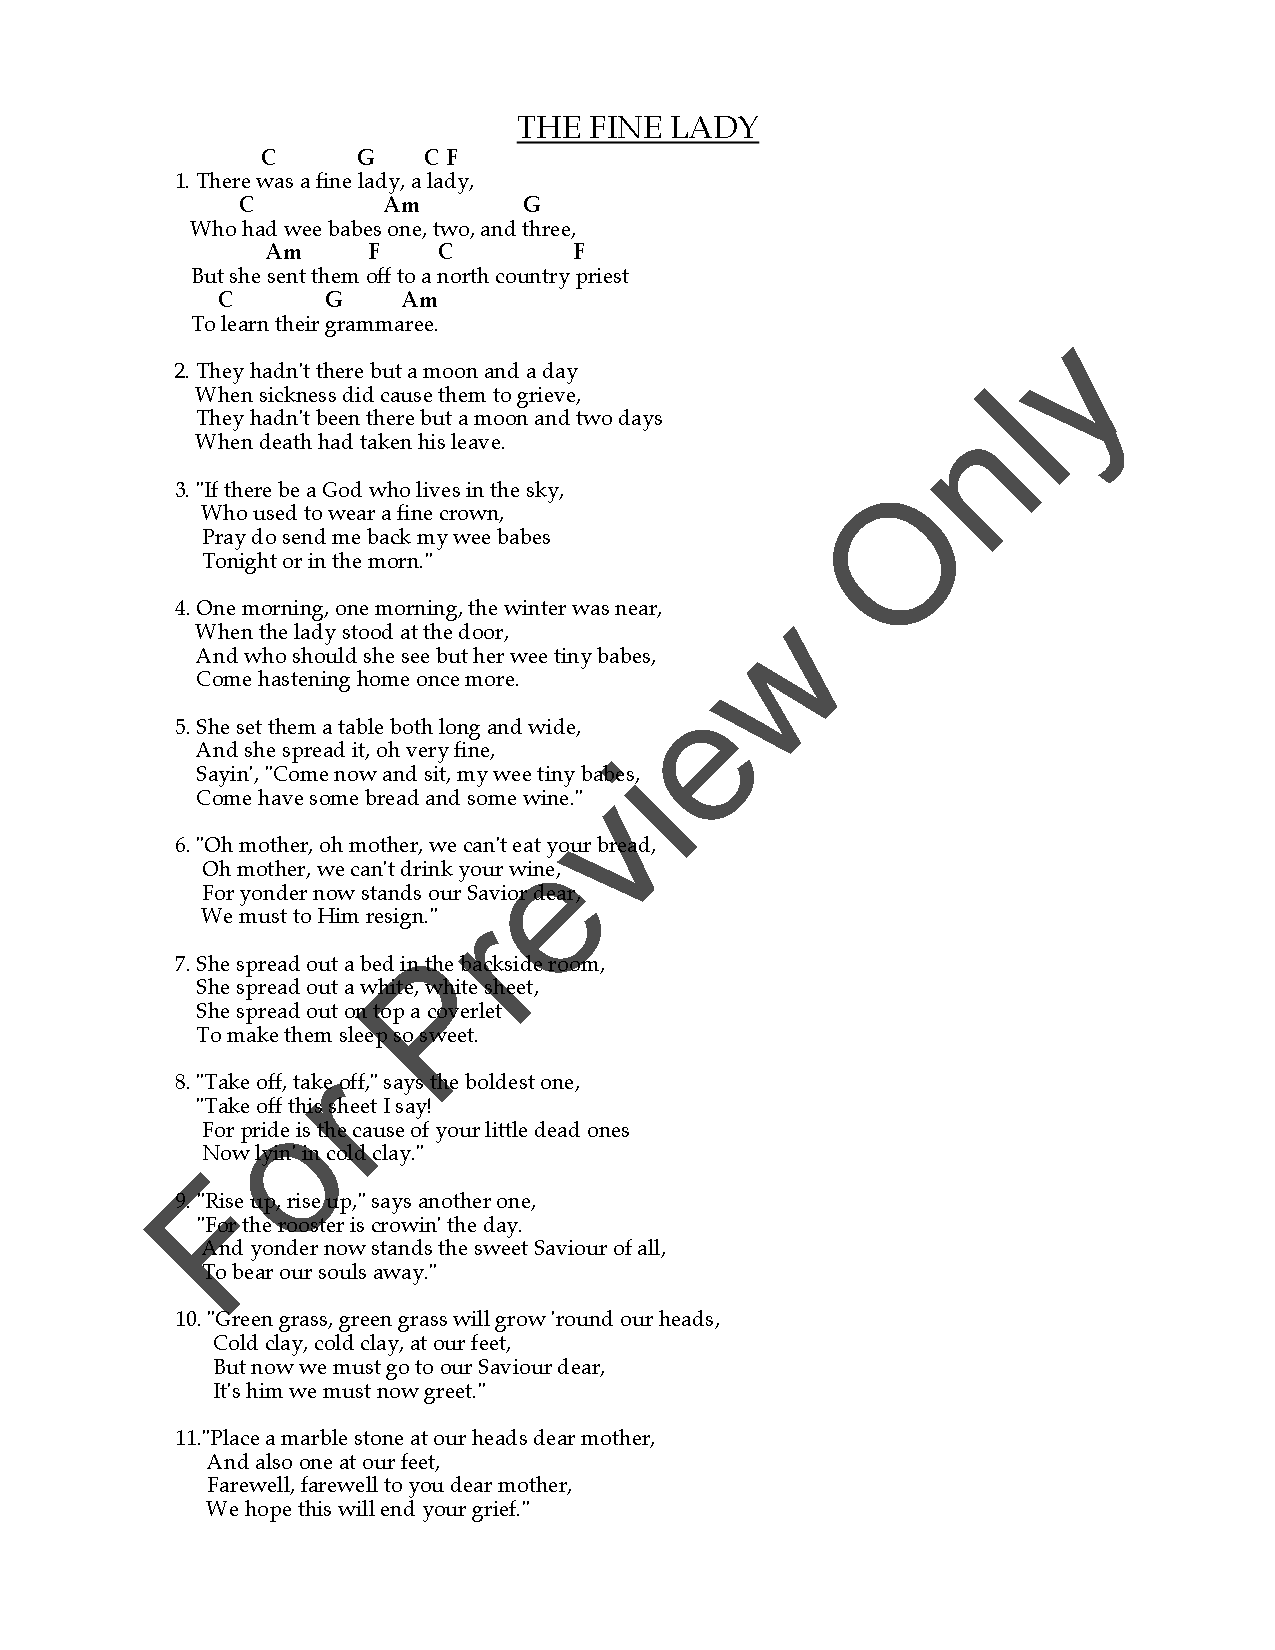 Appalachian & Ozark Songs, Vol. 3 P.O.D.